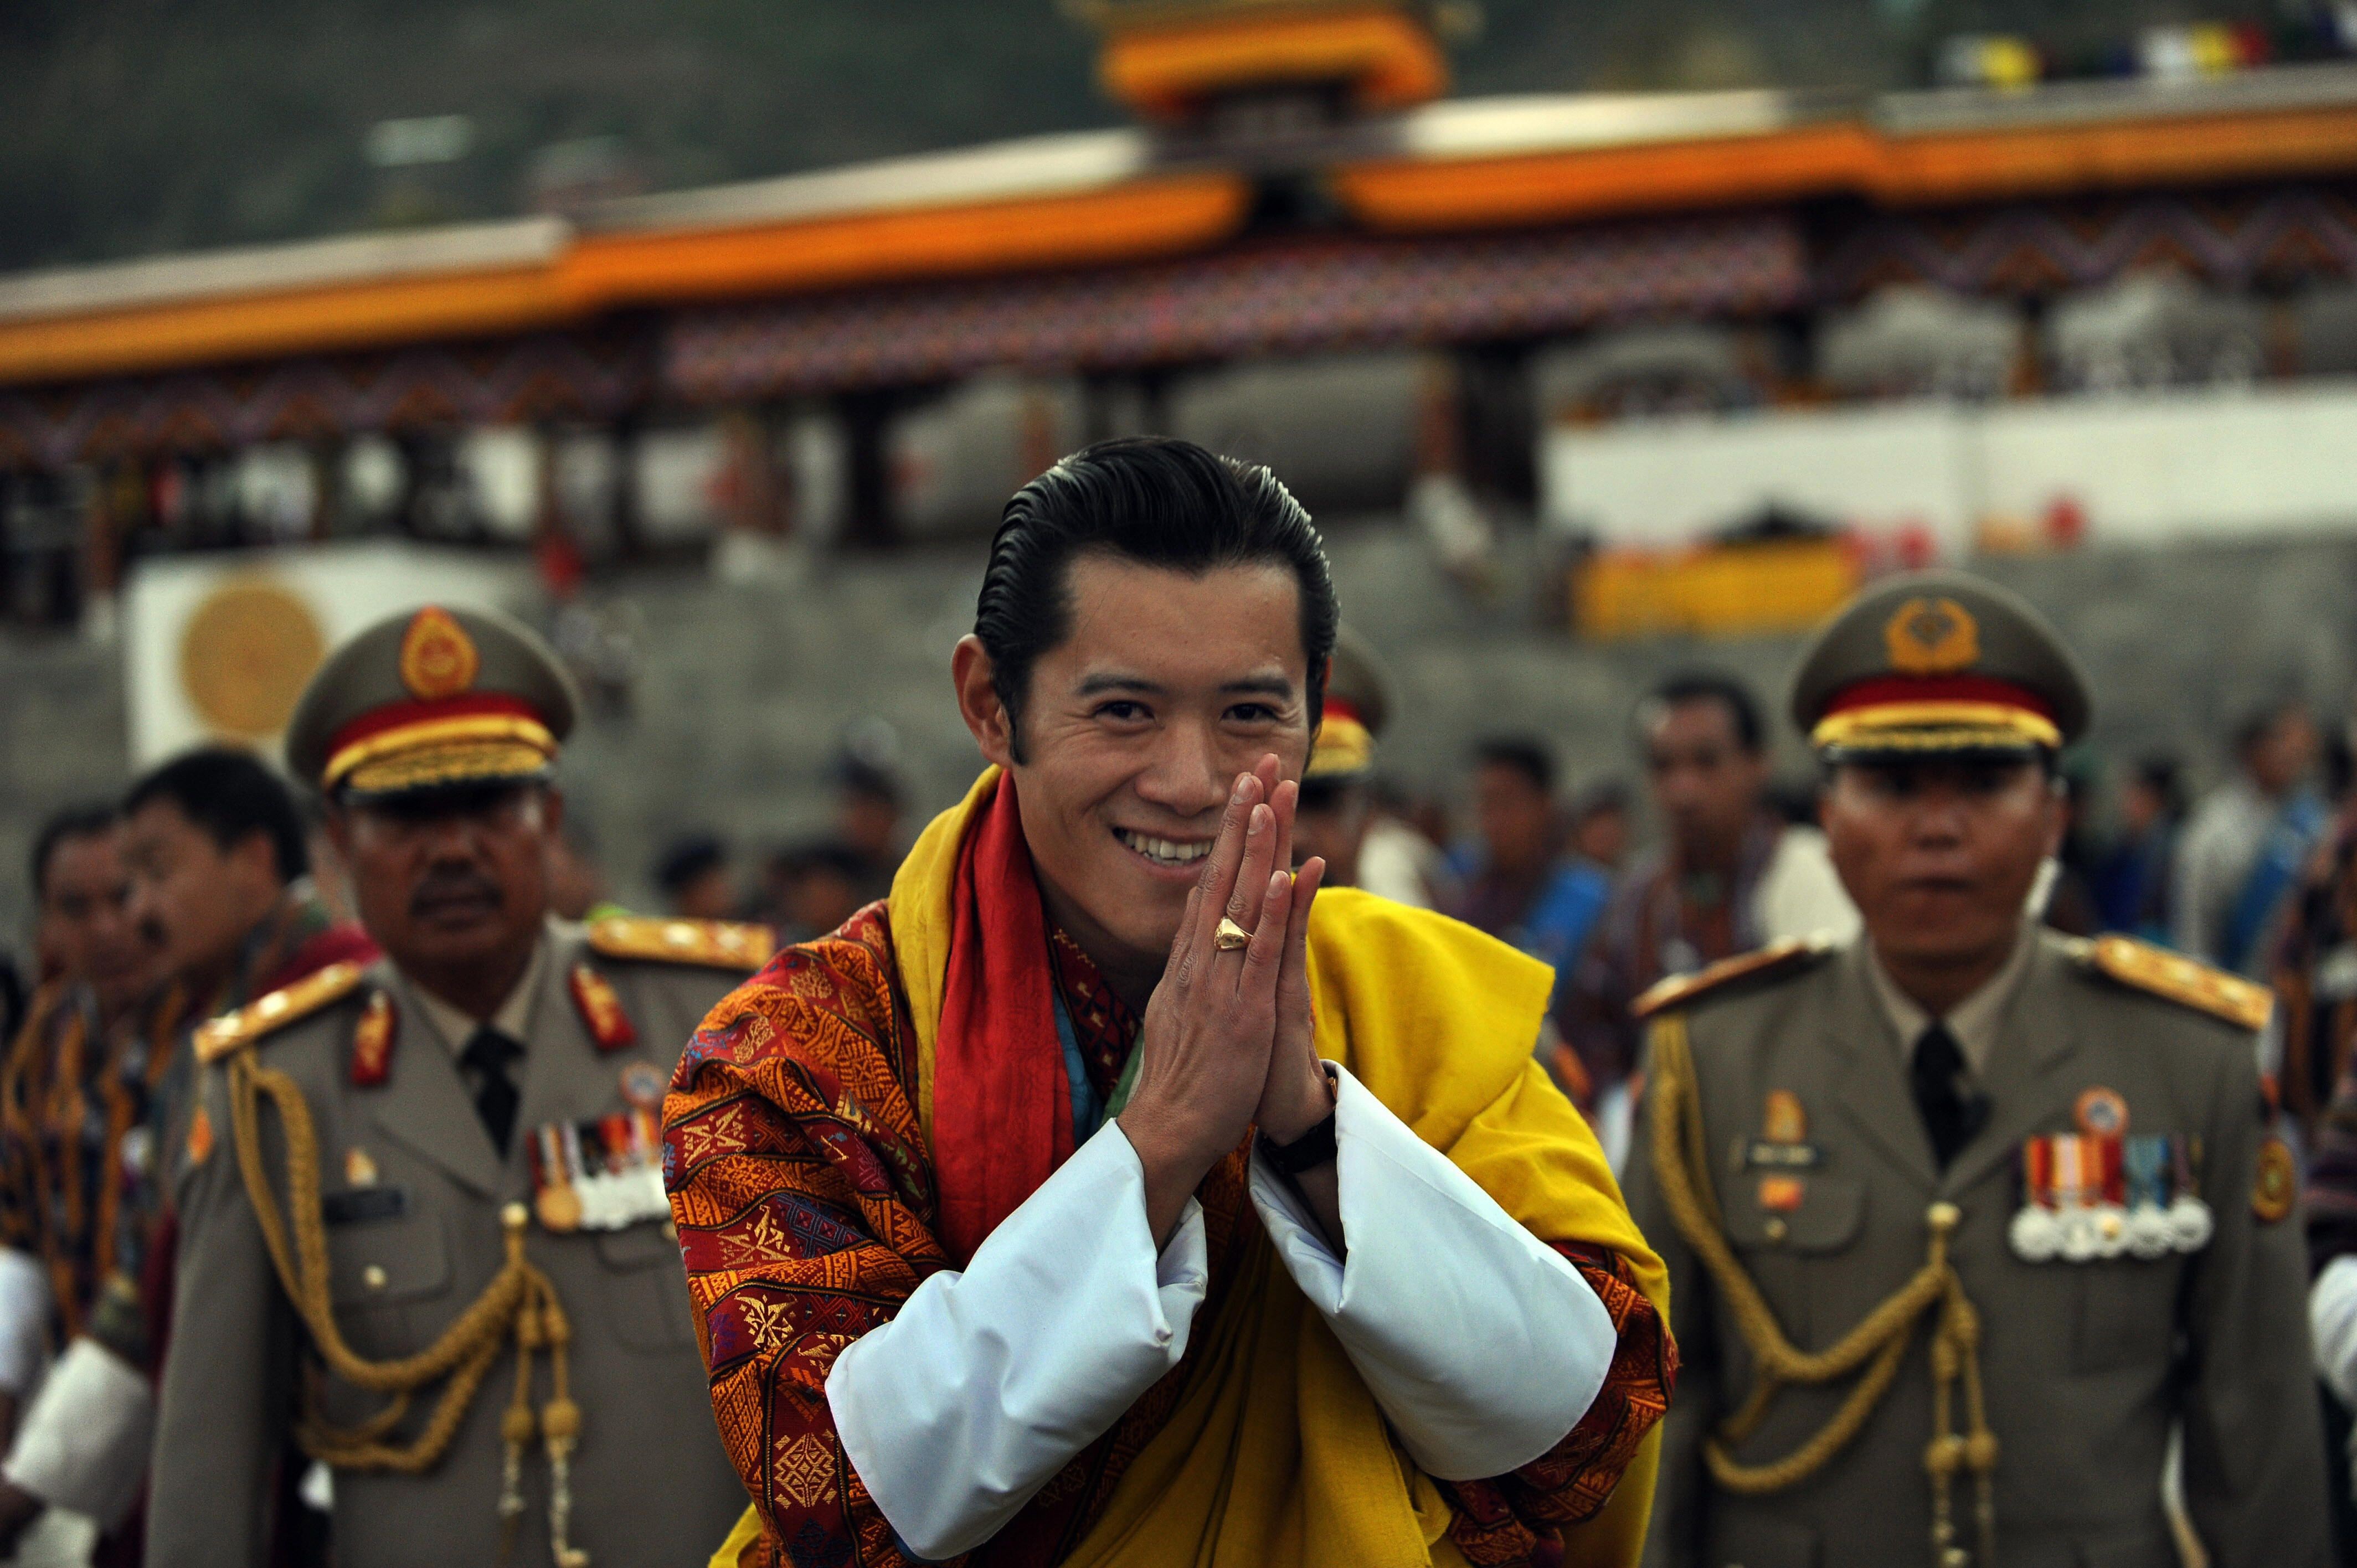 笑顔のおすそ分け 幸せの国 ブータン国王家族が素敵